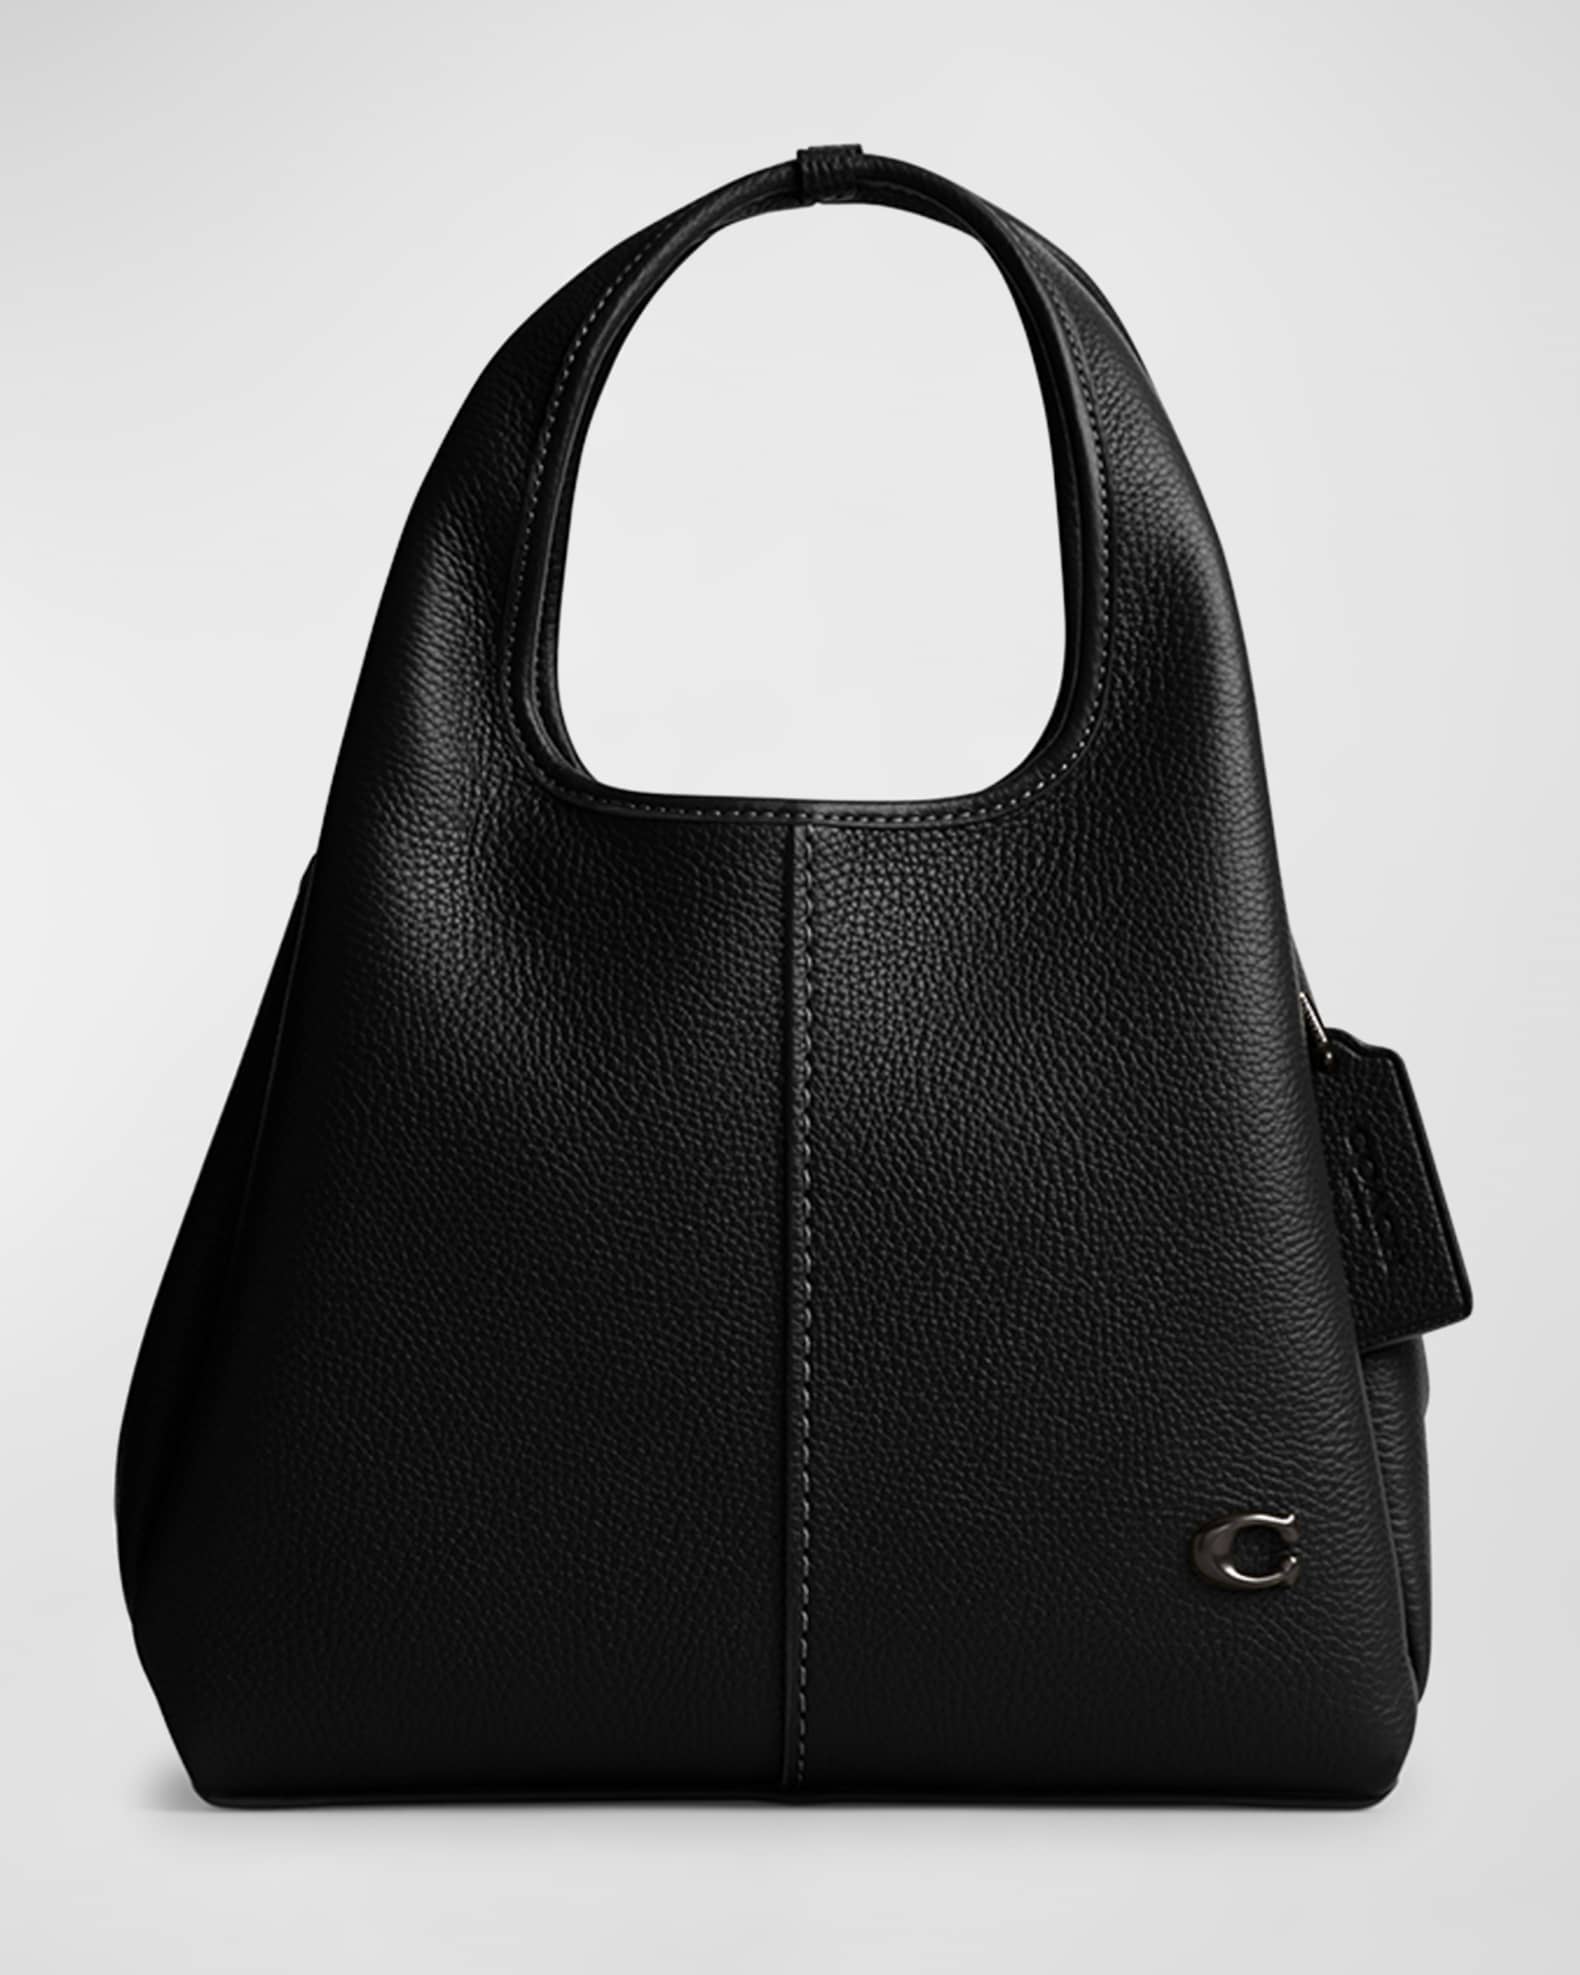 Coach Hadley Hobo shoulder bag leather 78800 black excellent